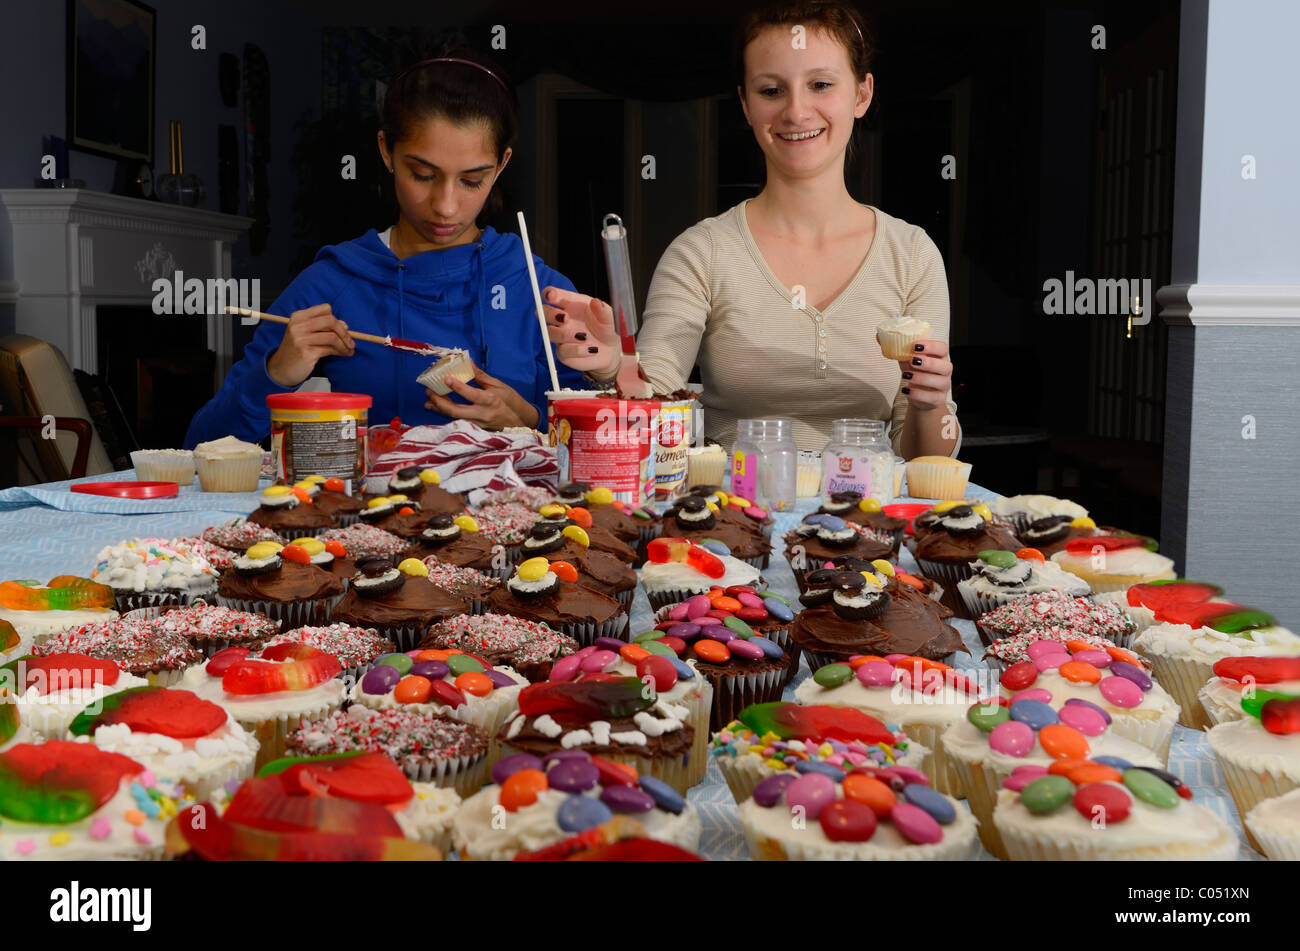 Zwei Mädchen im Teenager-Alter home Dekoration gemacht Cupcakes auf einen Tisch für eine große Partei Stockfoto